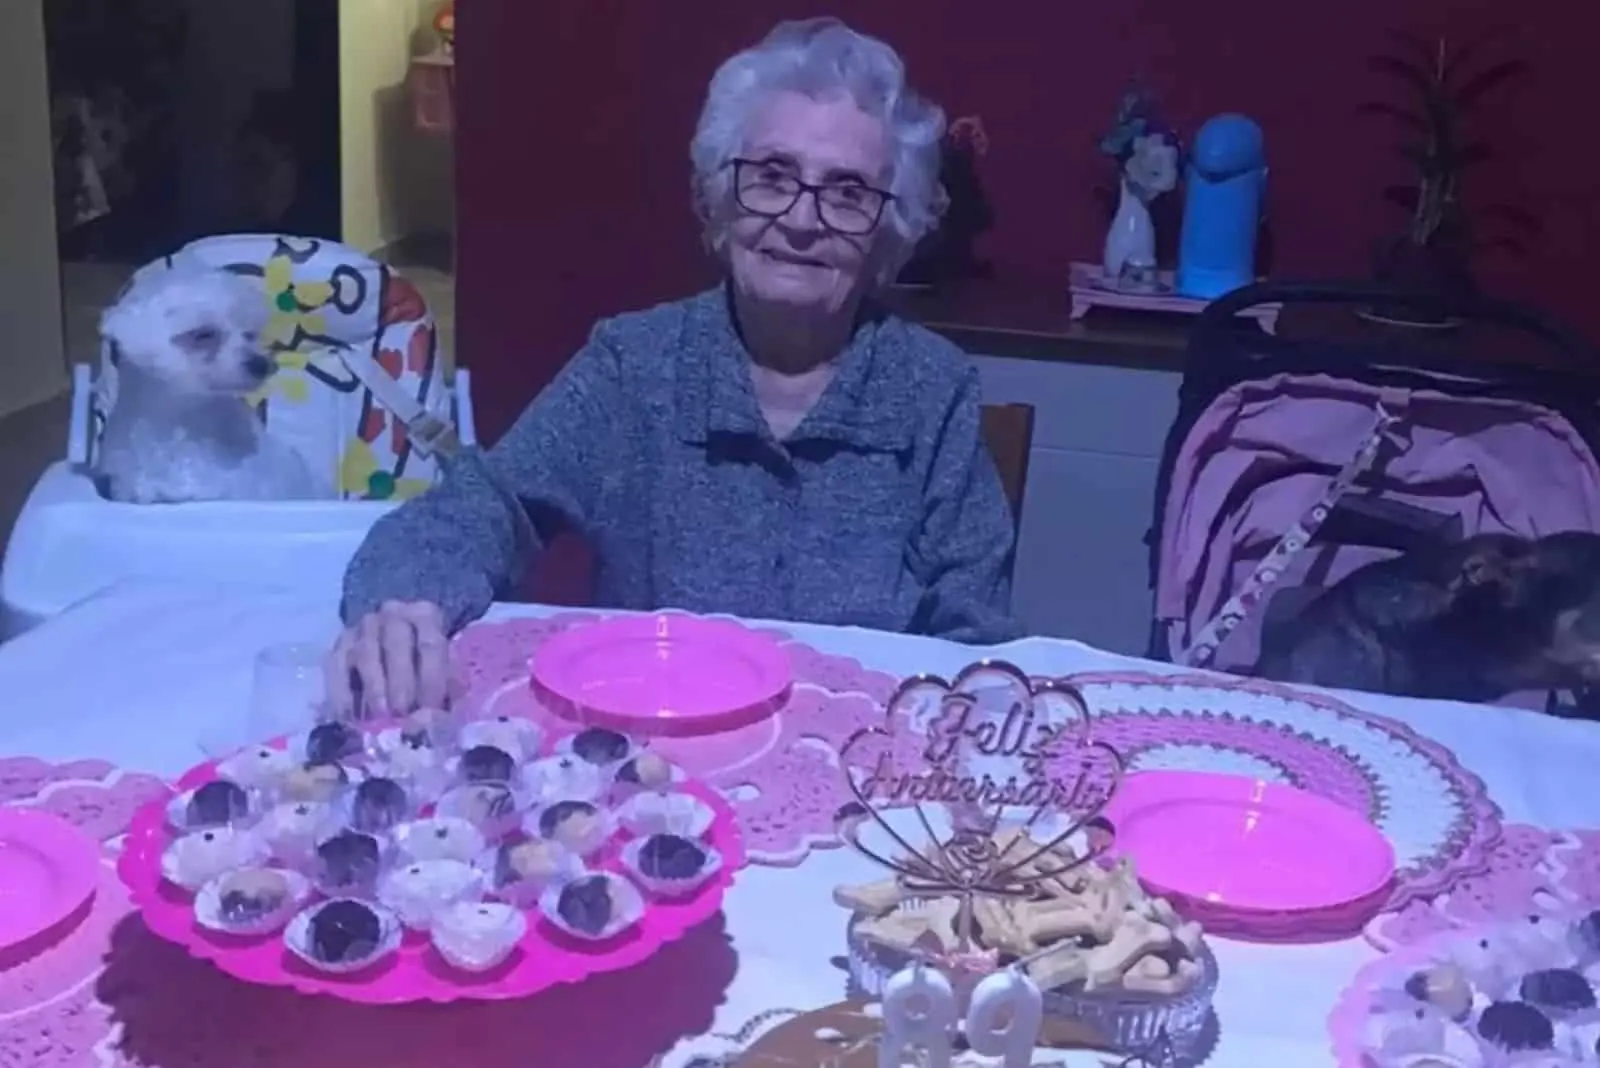 grandma celebrating birthday